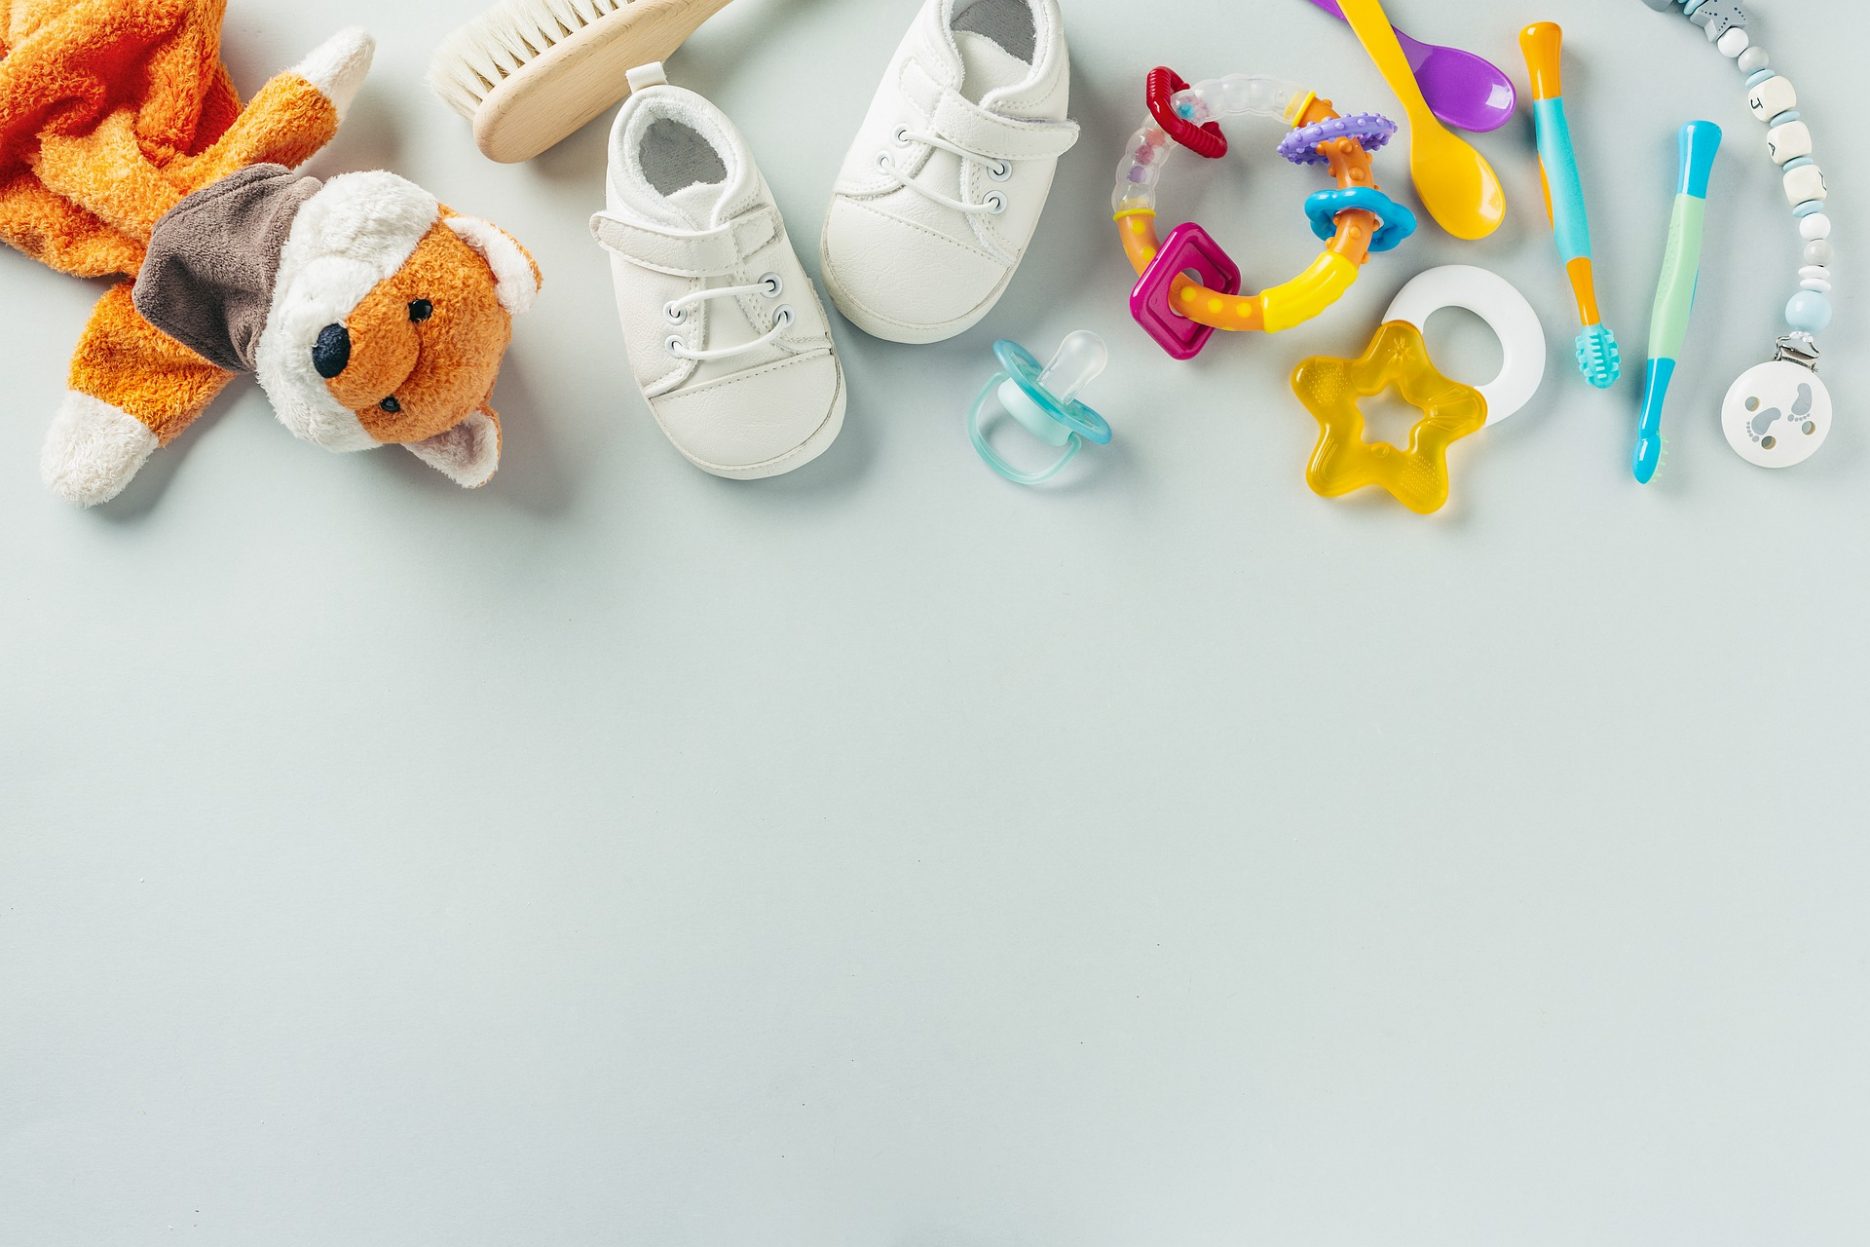 Das Bild zeigt verschiedene, bunte Baby-Sachen: Fuchs-Kuscheltier, Haarbürste, Schuhe, Spielzeug, Schnuller und Schnullerkette, Zahnbürsten, Löffel.